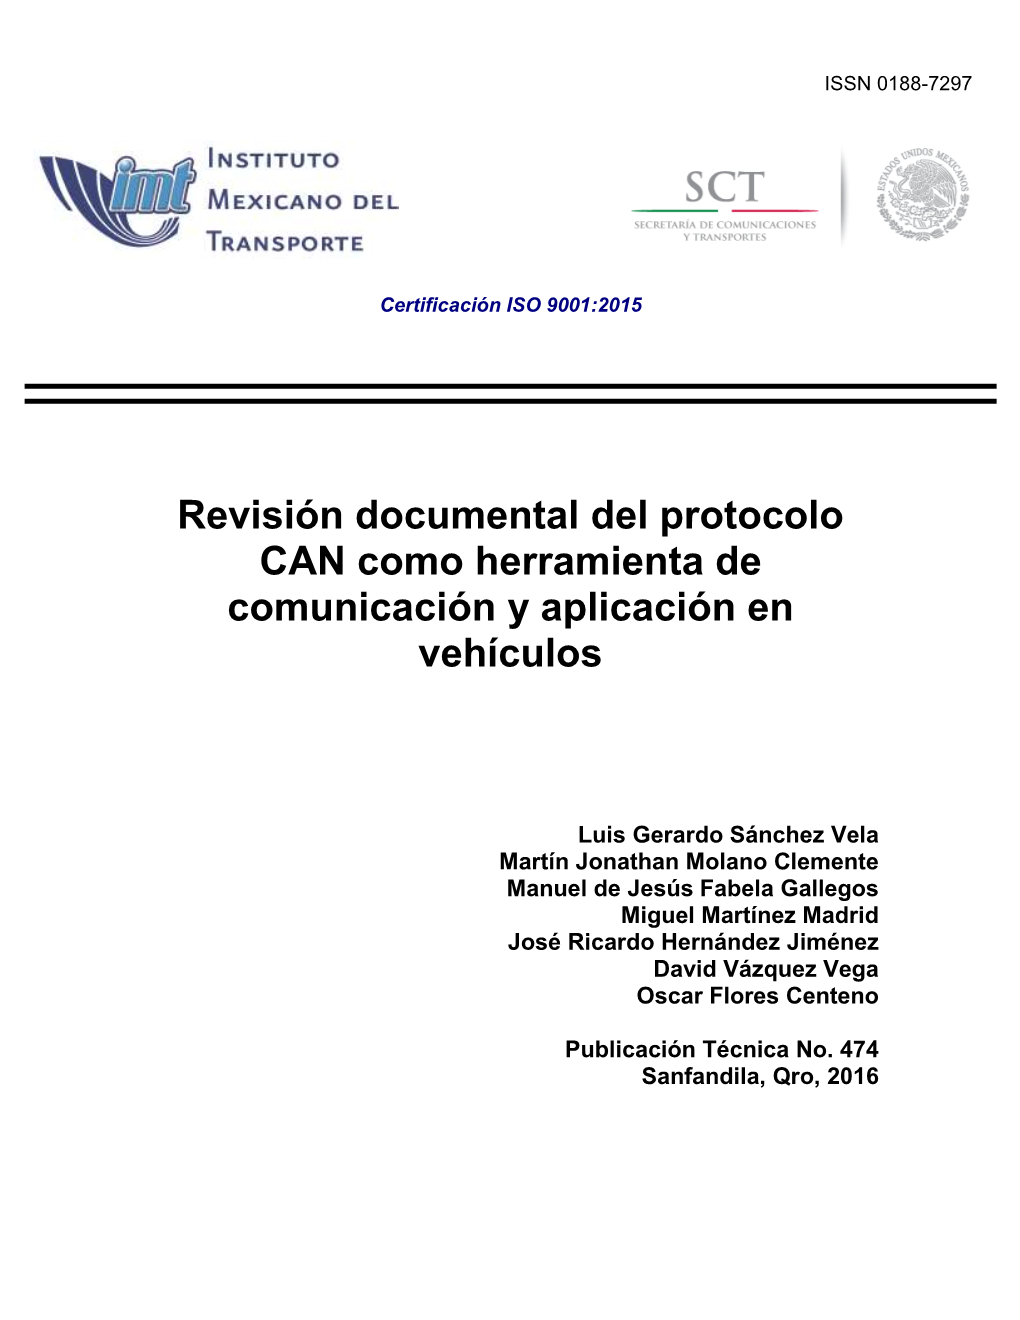 Revisión Documental Del Protocolo CAN Como Herramienta De Comunicación Y Aplicación En Vehículos